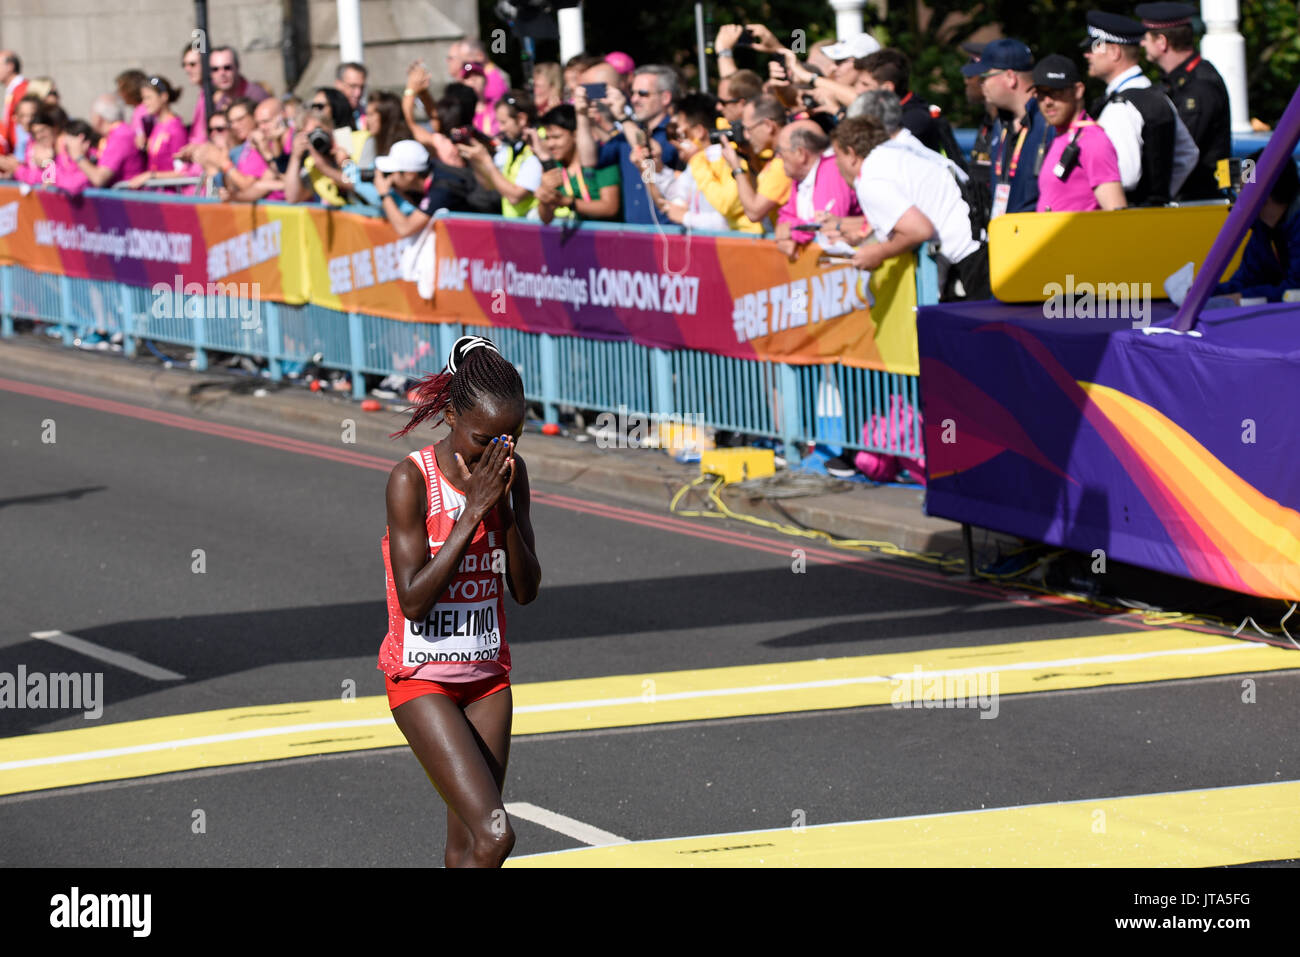 Rose Chelimo de Bahréin se emociona después de haber ganado el oro en la carrera de maratón del Campeonato Mundial de la IAAF 2017 en Londres, Reino Unido Foto de stock